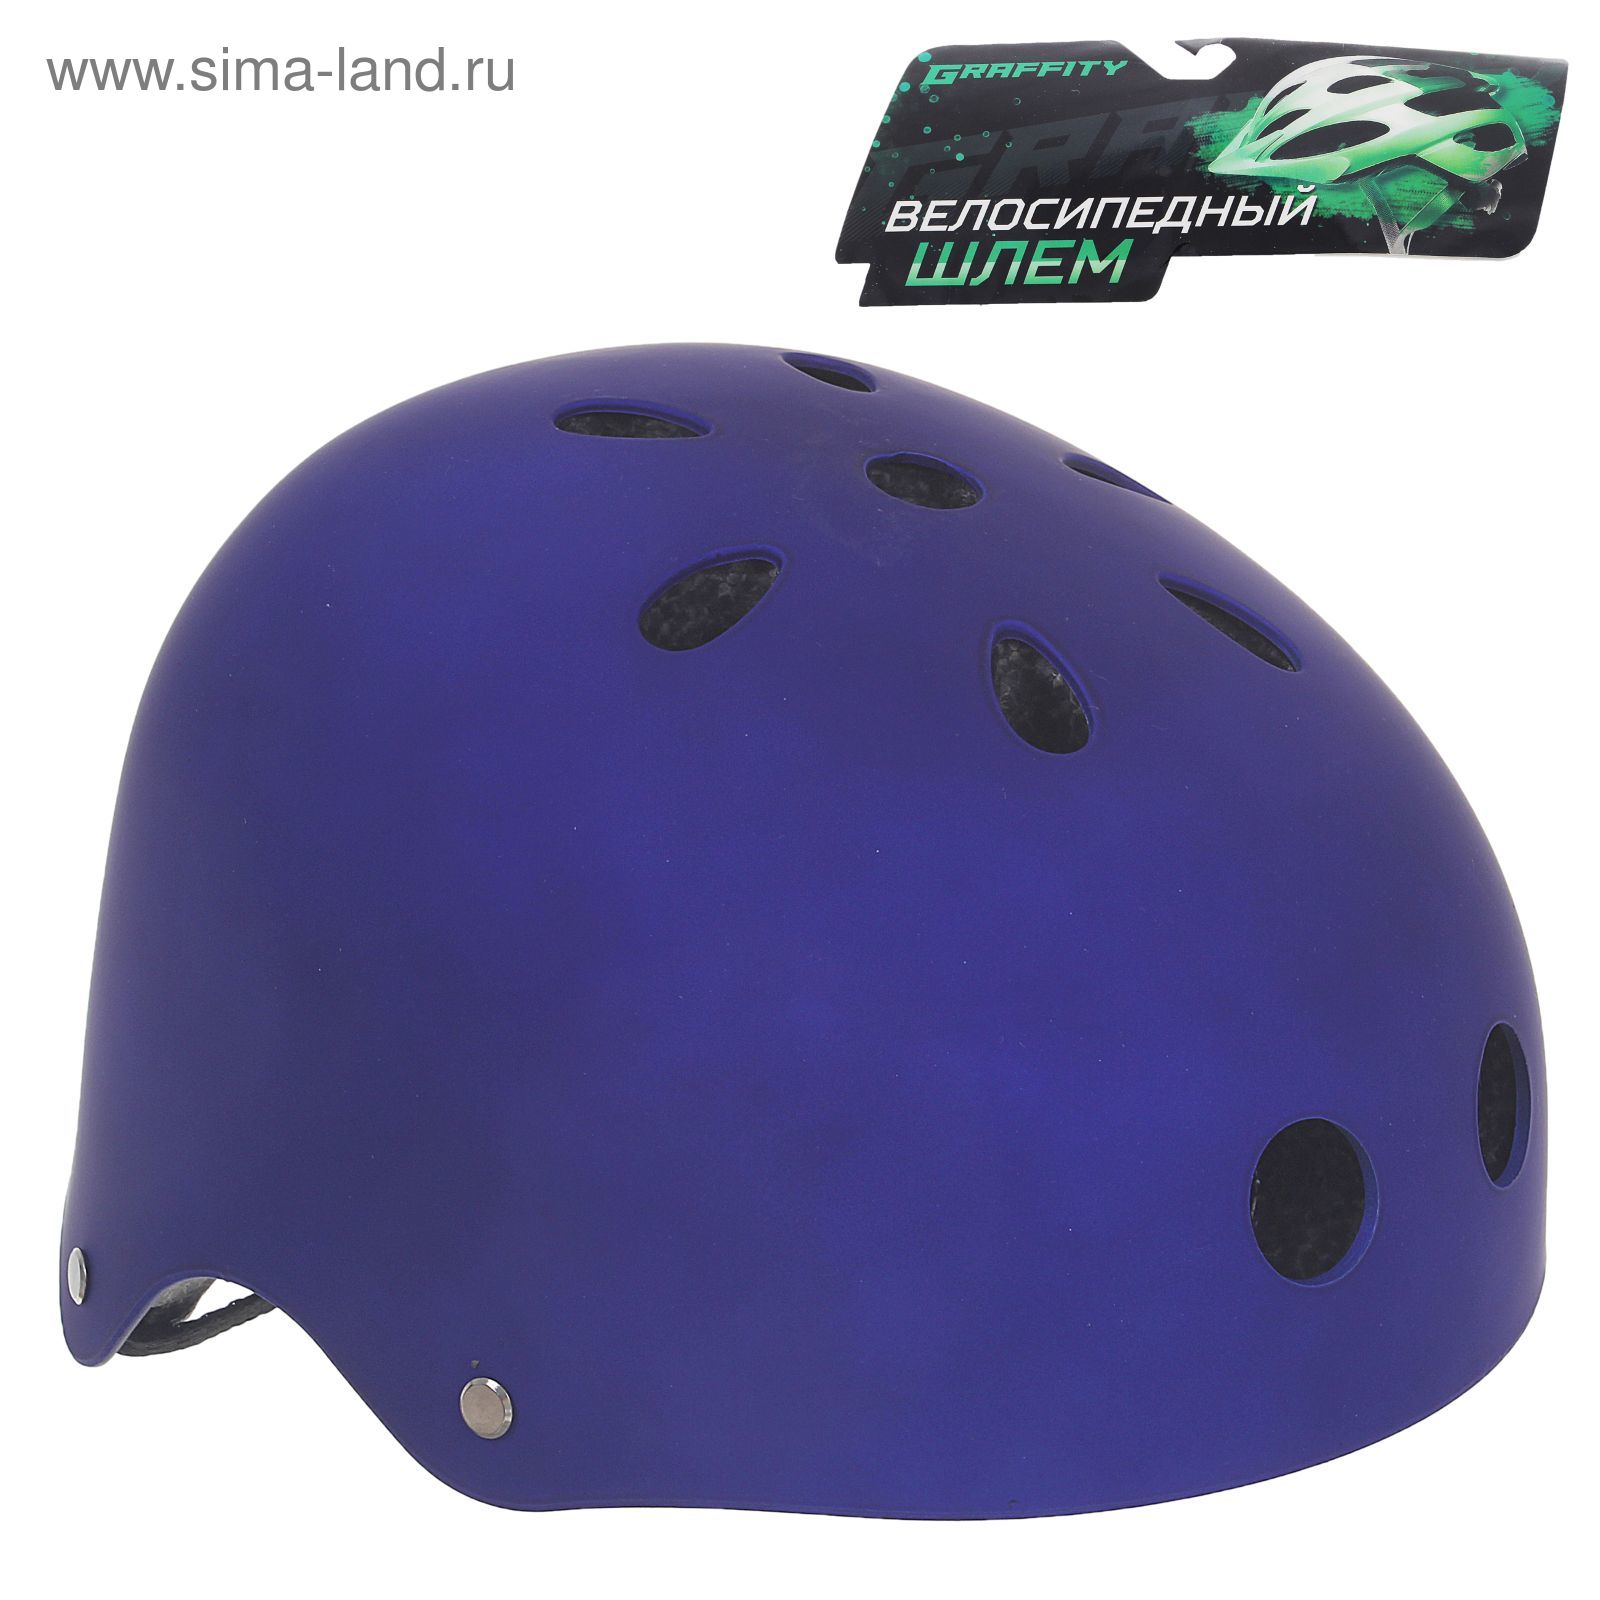 Шлем велосипедиста взрослый ОТ-GK1, матовый, синий d=56 см